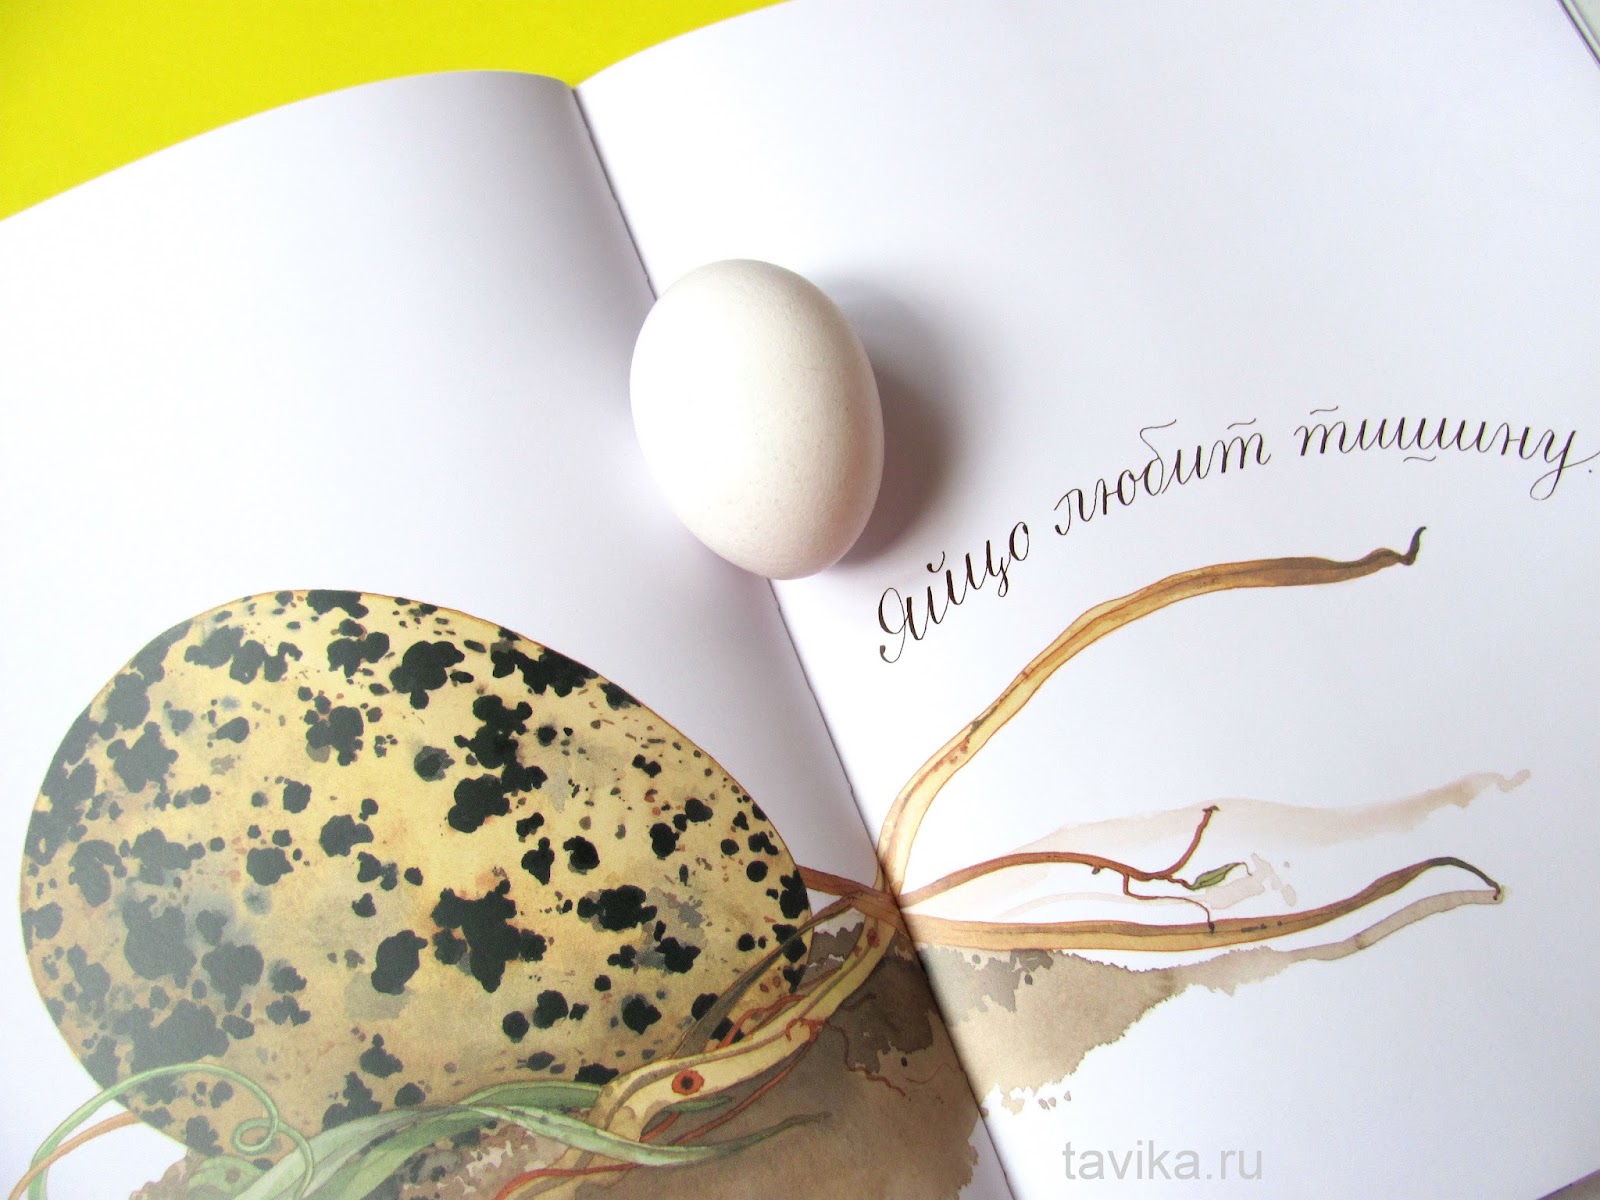 Обожает яйца. Книга про яйца. Яйцо любит тишину. Яйцо занятия по книге материалы идеи. Книга с яйцом на обложке.